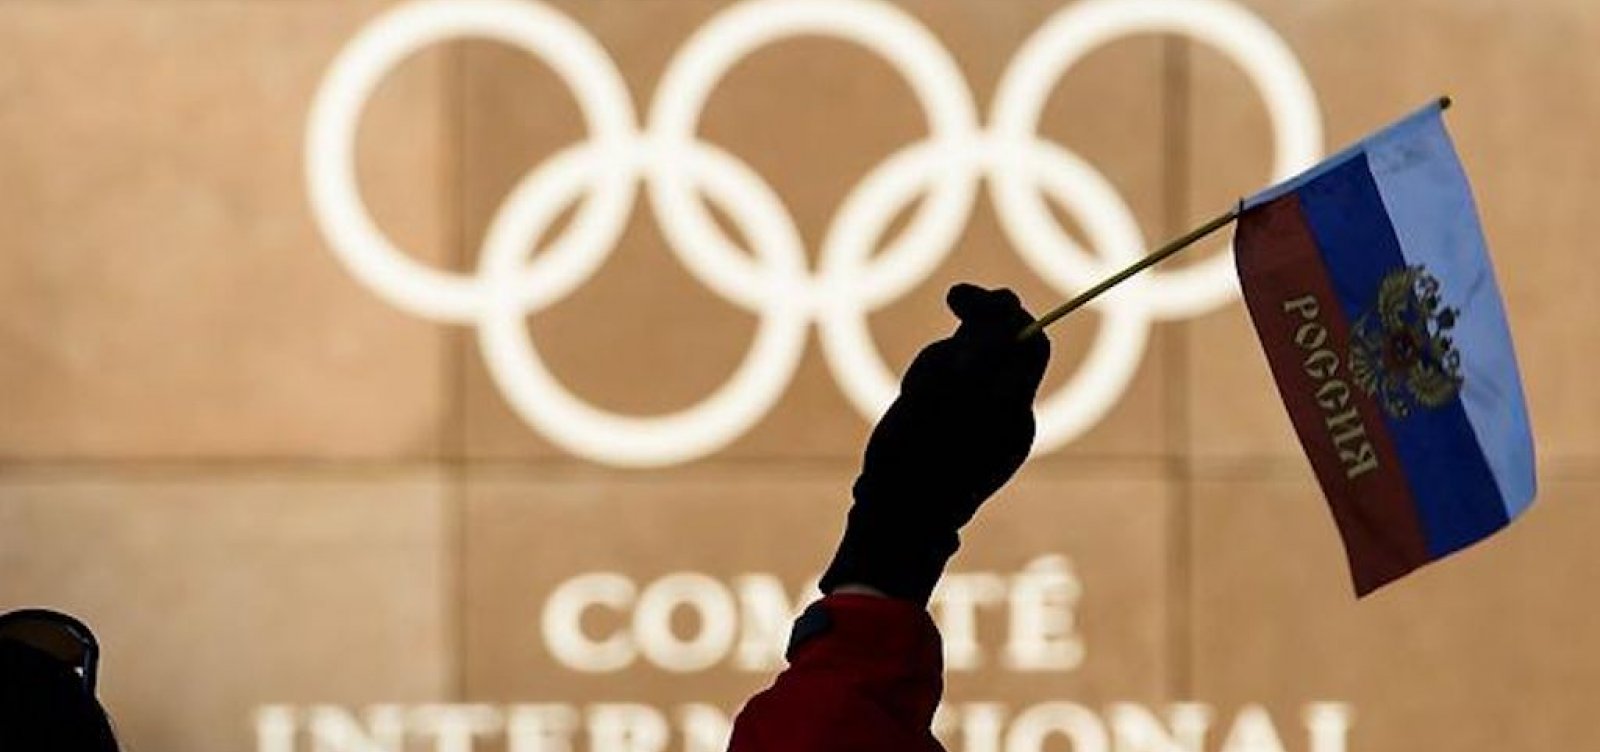 Após caso de doping, Rússia é banida das Olímpiadas e de campeonatos mundiais até 2023